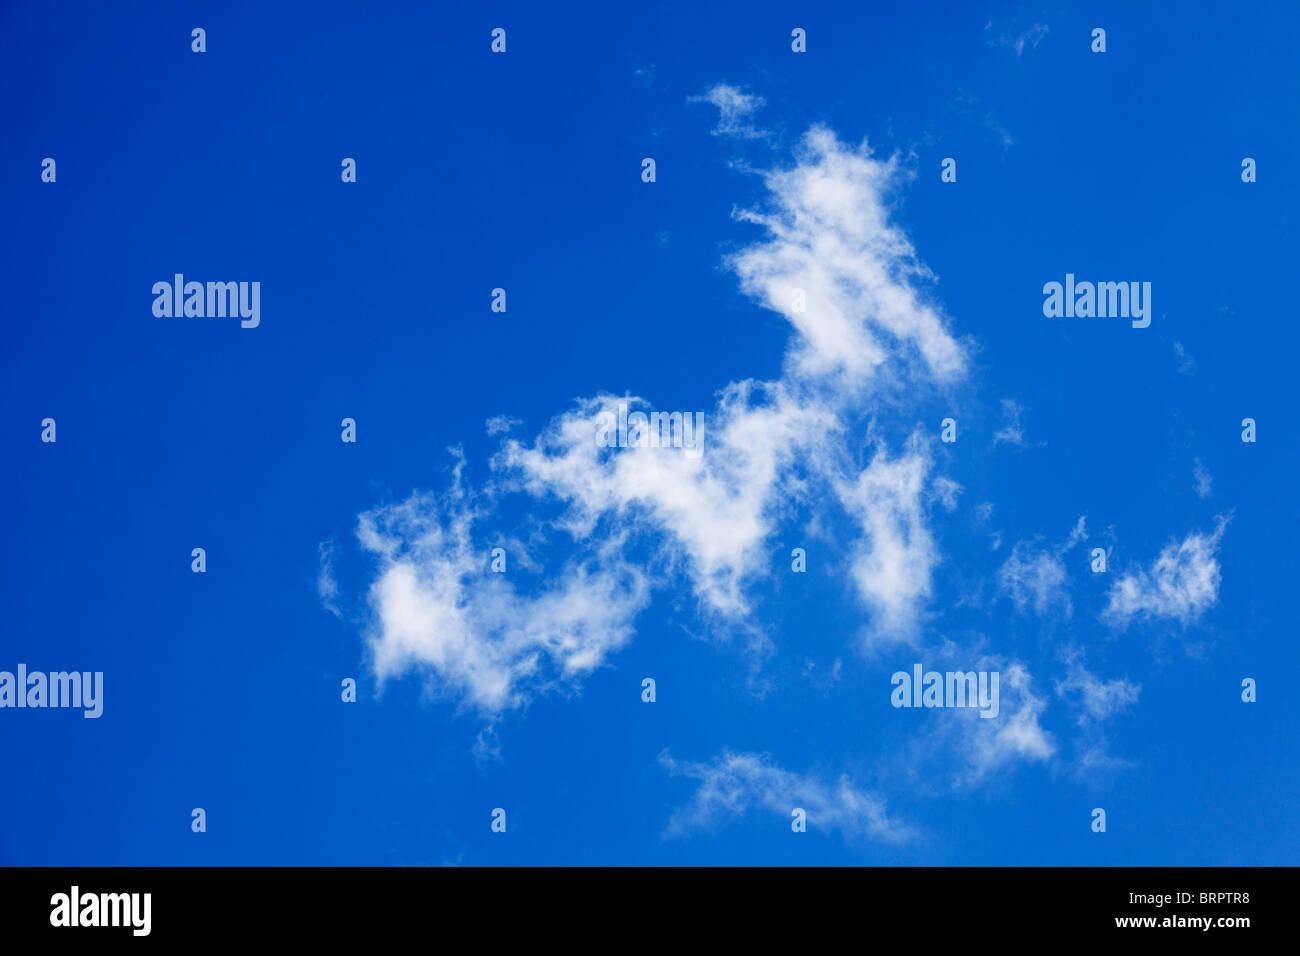 El cielo azul con nubes cirrus mirando hacia arriba Foto de stock